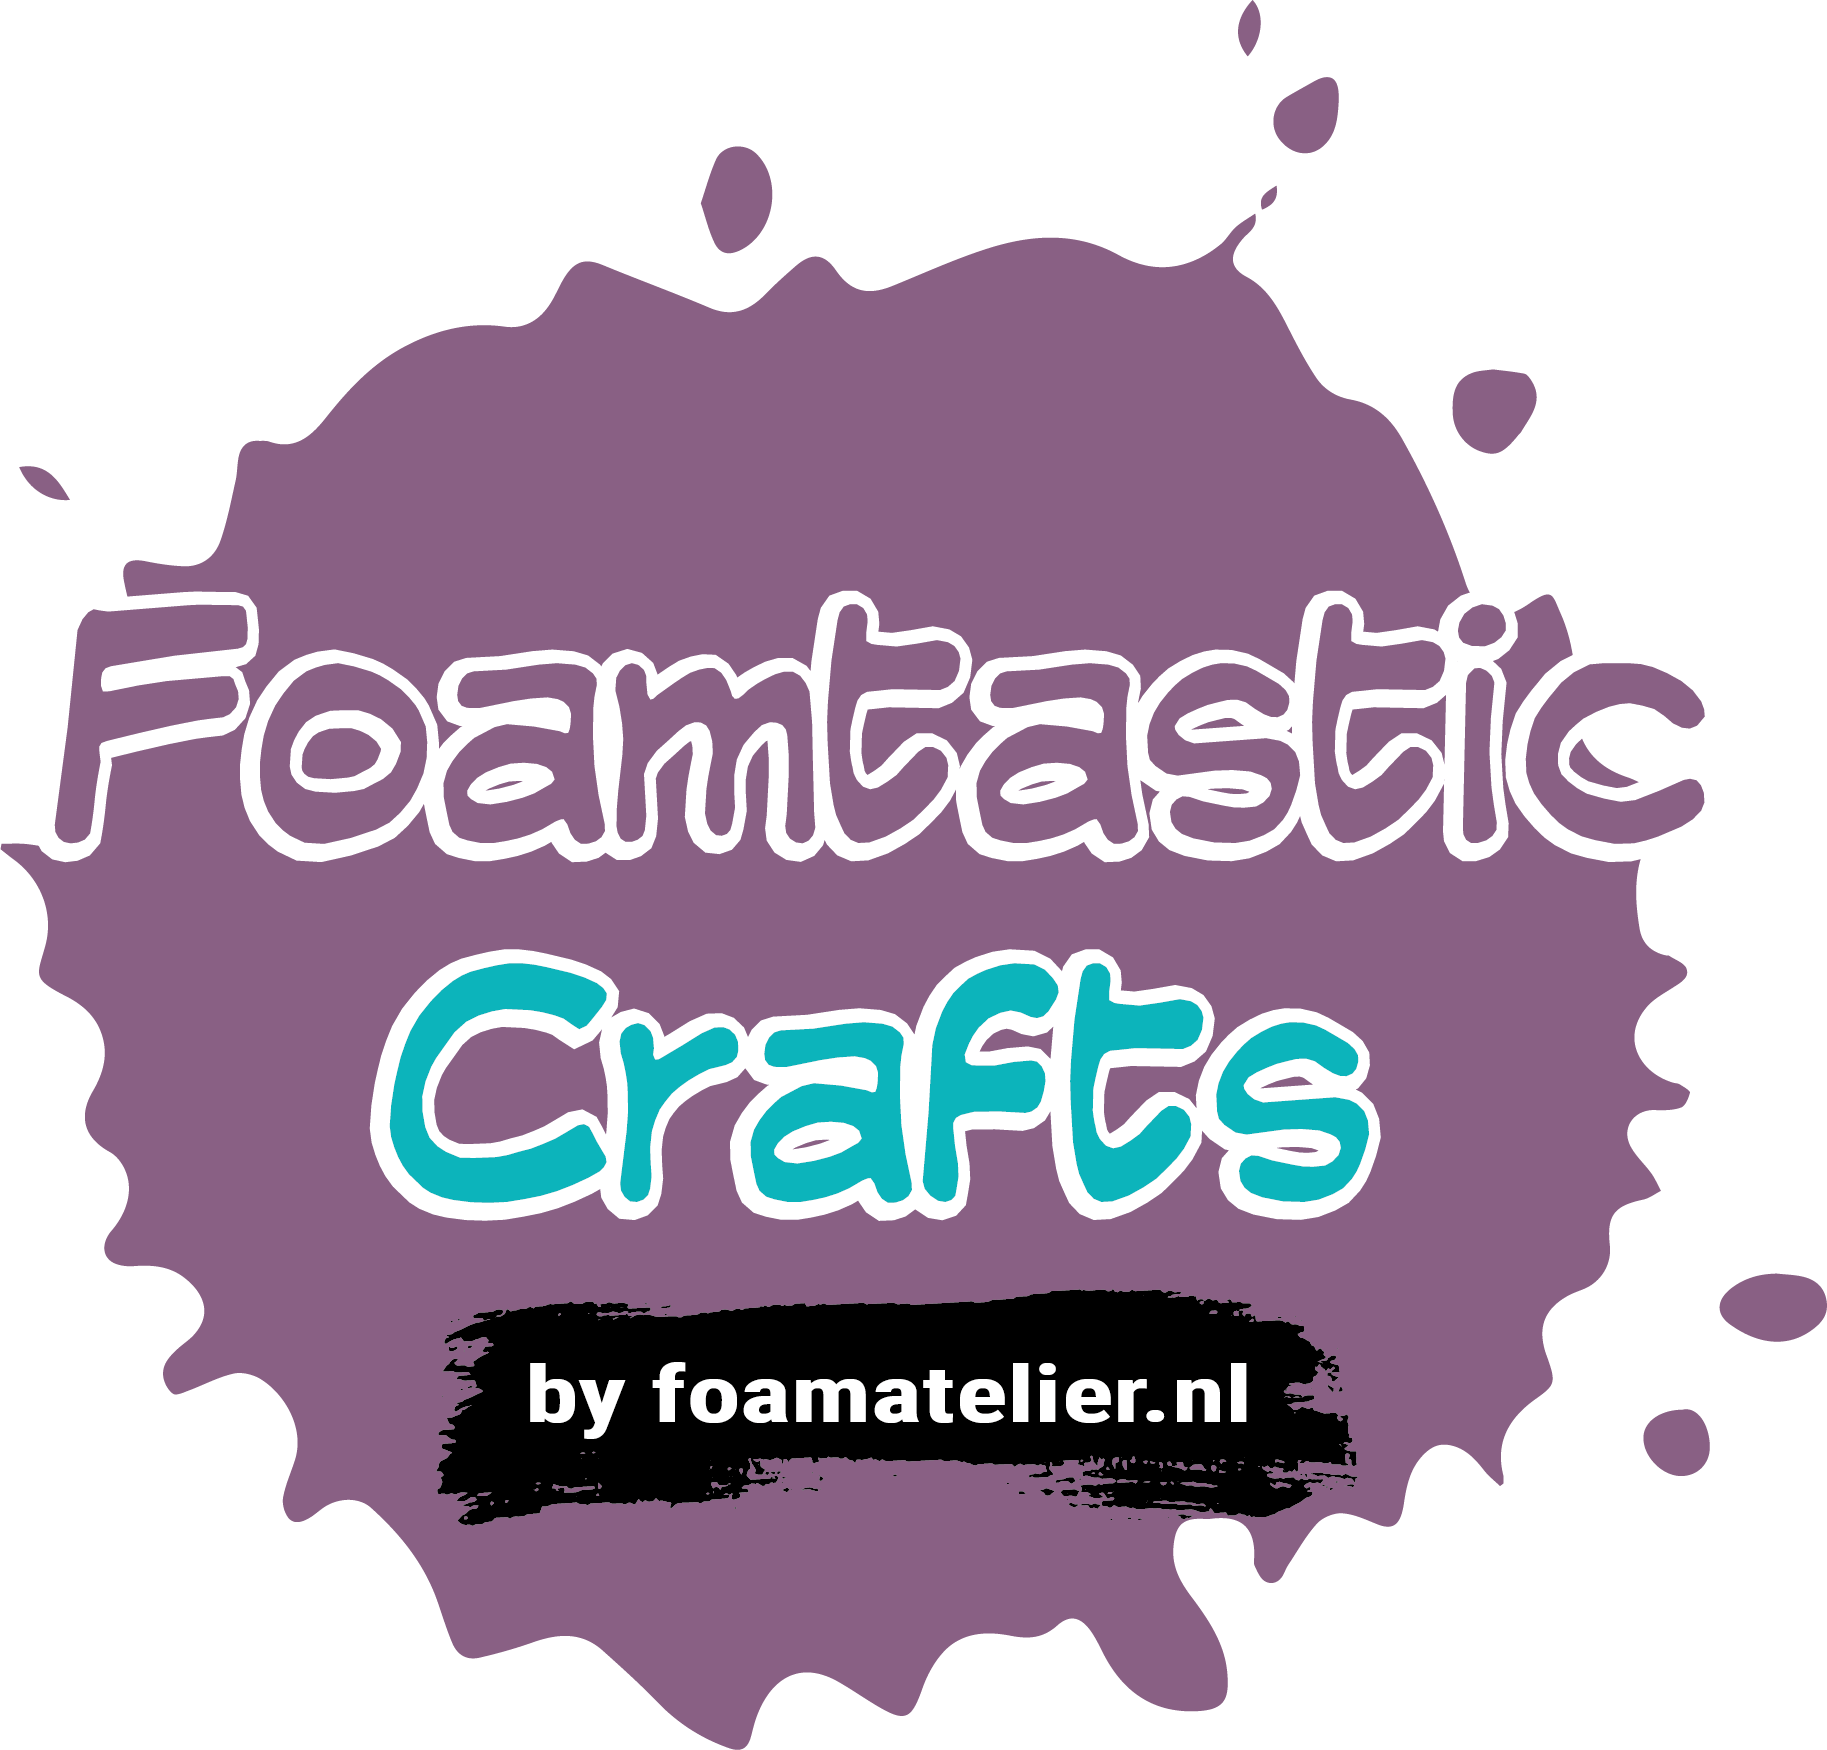 Foamtastic Crafts by foamatelier.nl